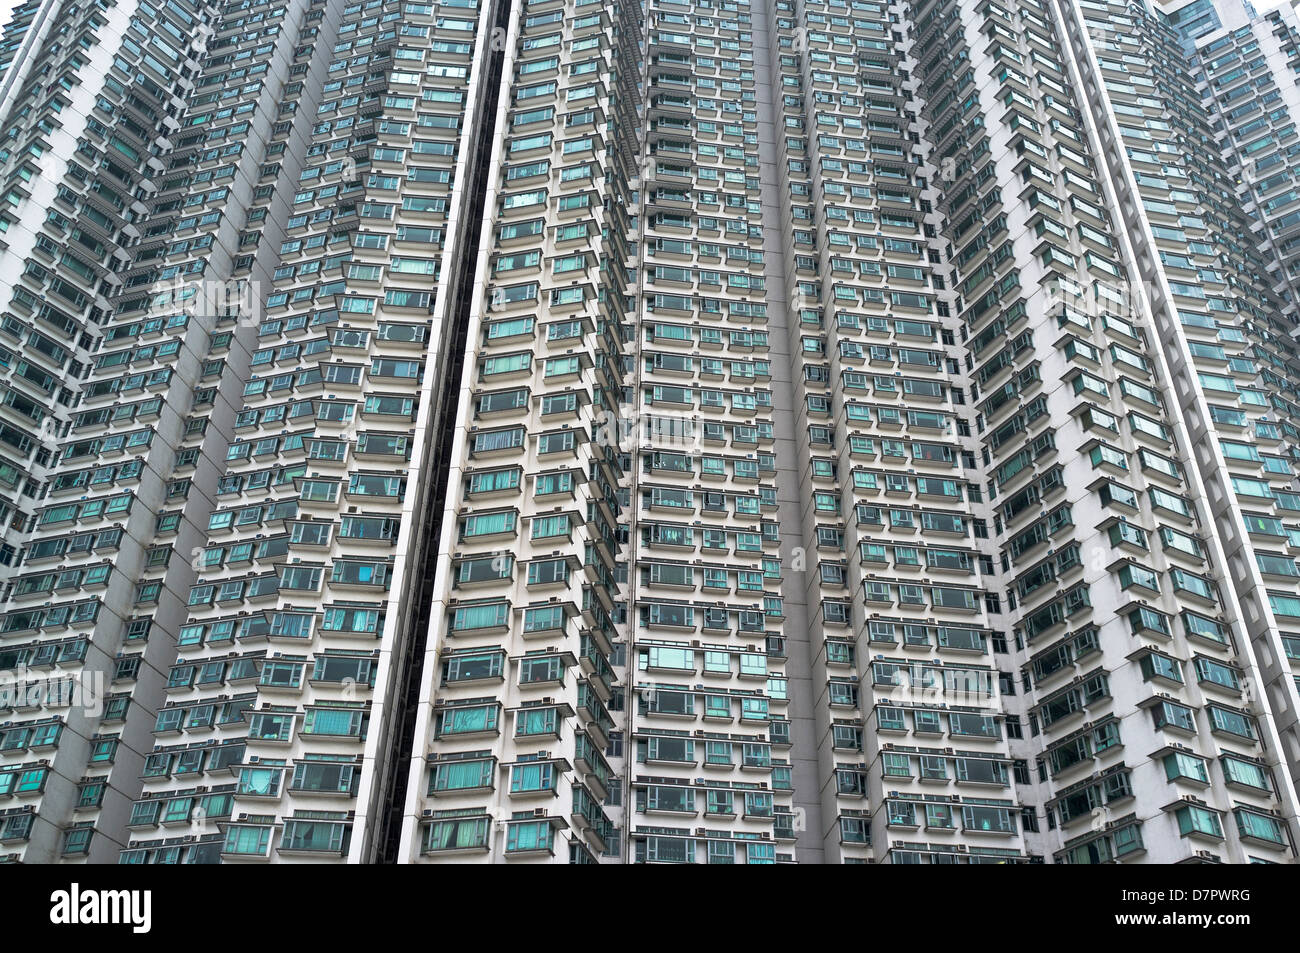 Dh de vivienda pública del Gobierno de Hong Kong, Tung Chung pisos gigantescos bloques de gran altura de la torre de densidad de población bloques nuevos territorios Foto de stock